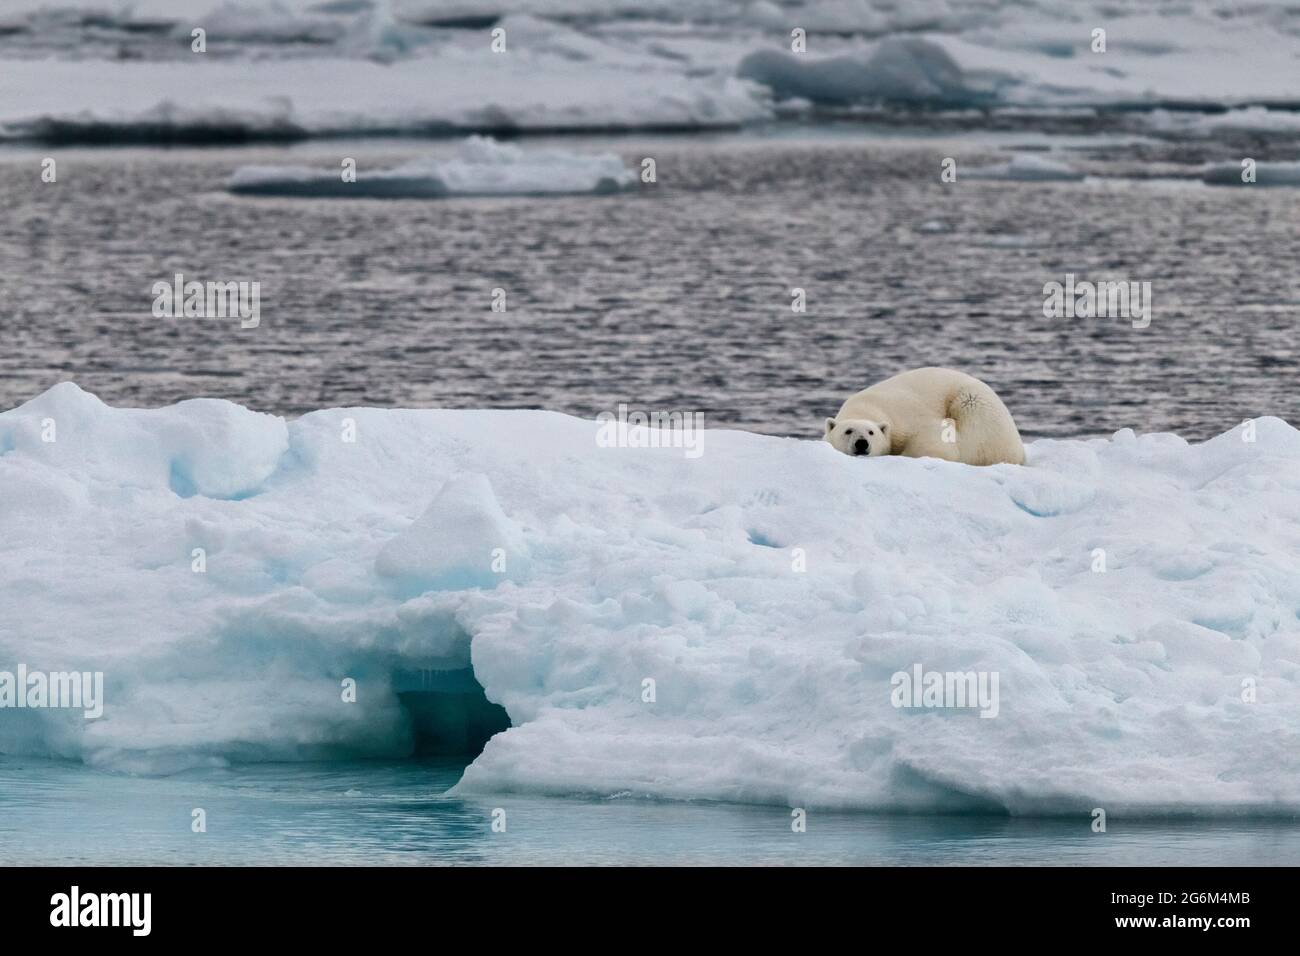 Ours polaire (Ursus maritimus) sur l'iceberg. Svalbard, Spitzbergen, Norvège, Arctique Banque D'Images